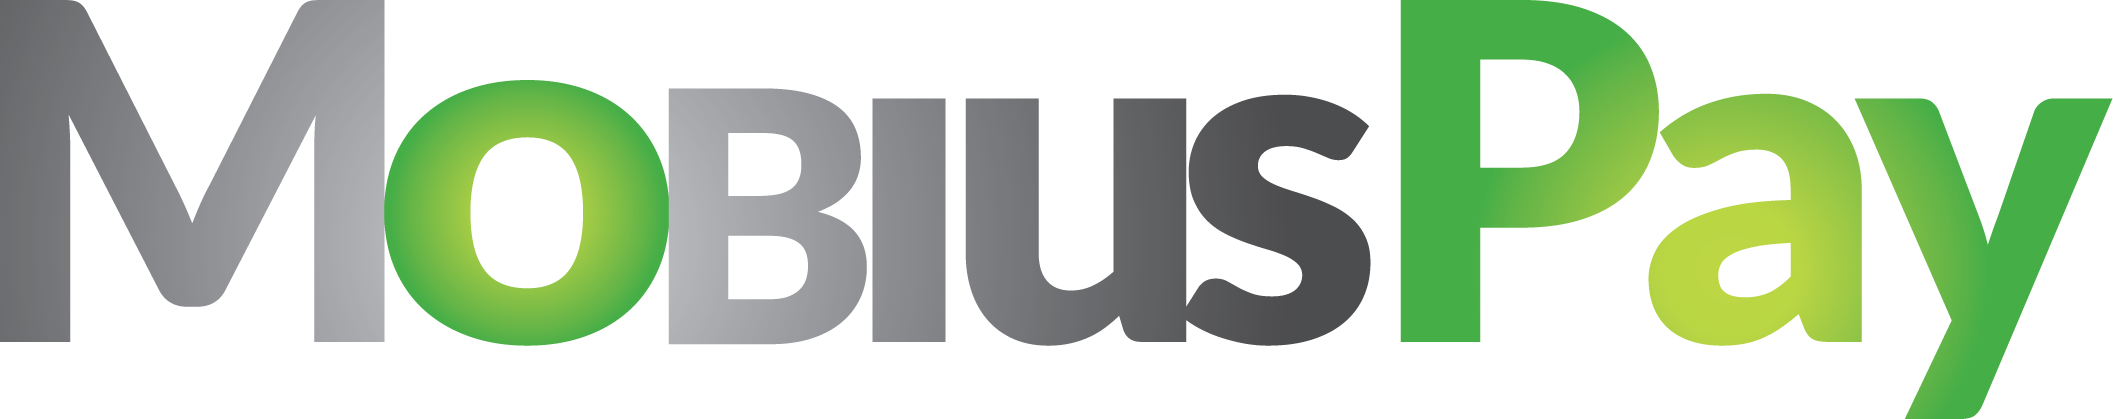 image of mobius pay logo